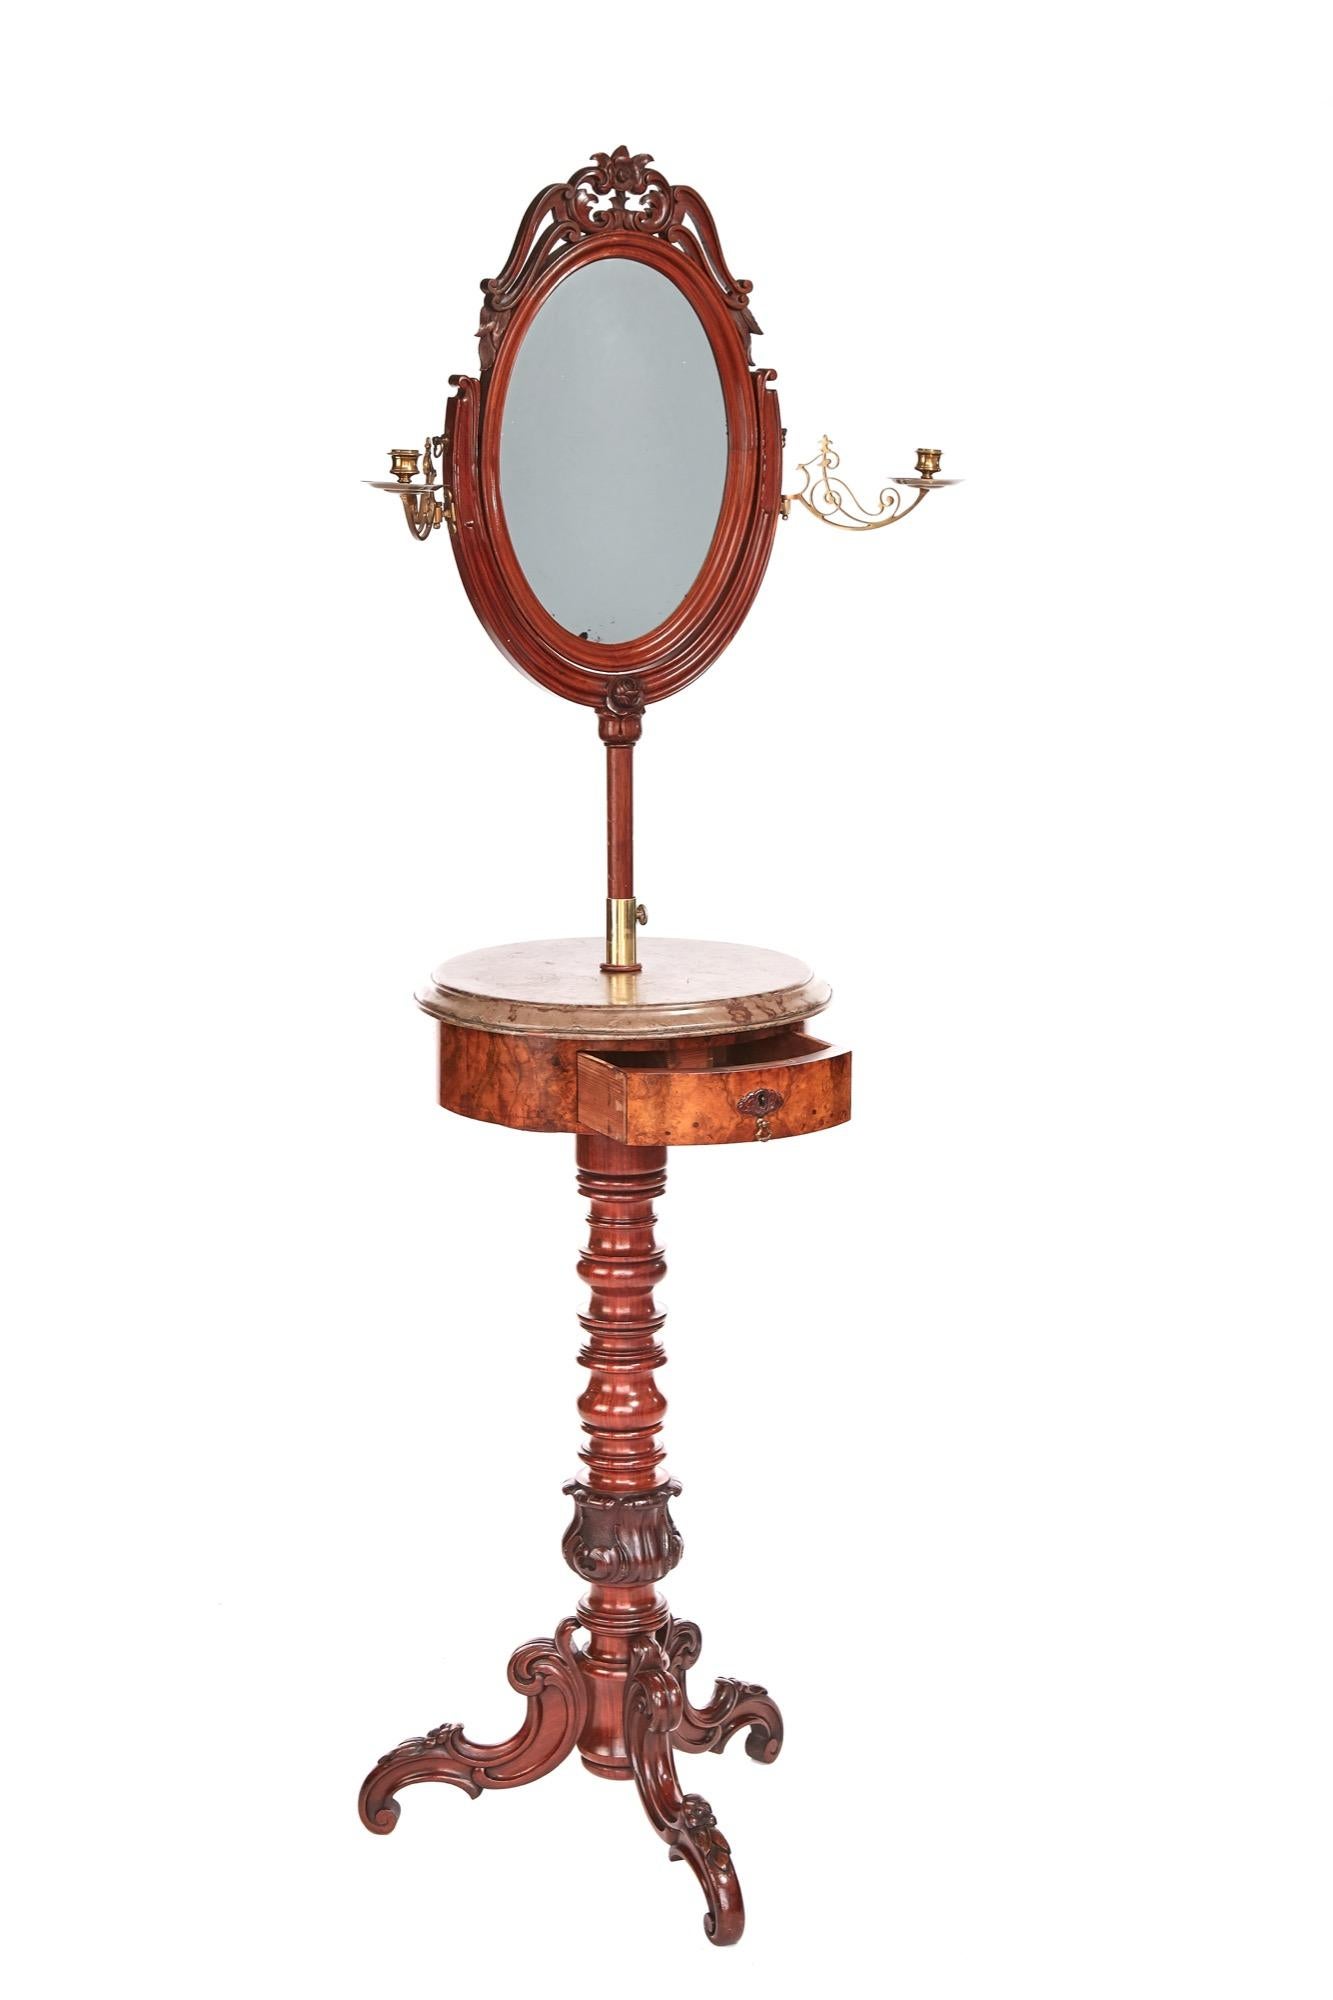 Feine Qualität viktorianischen Mahagoni und Nussbaum Teleskop Kleiderständer mit einem atemberaubenden ovalen Mahagoni gerahmt Schaukel Spiegel mit kunstvollen Schnitzereien auf der Oberseite. Er steht auf einem U-förmigen, eleganten, ausziehbaren